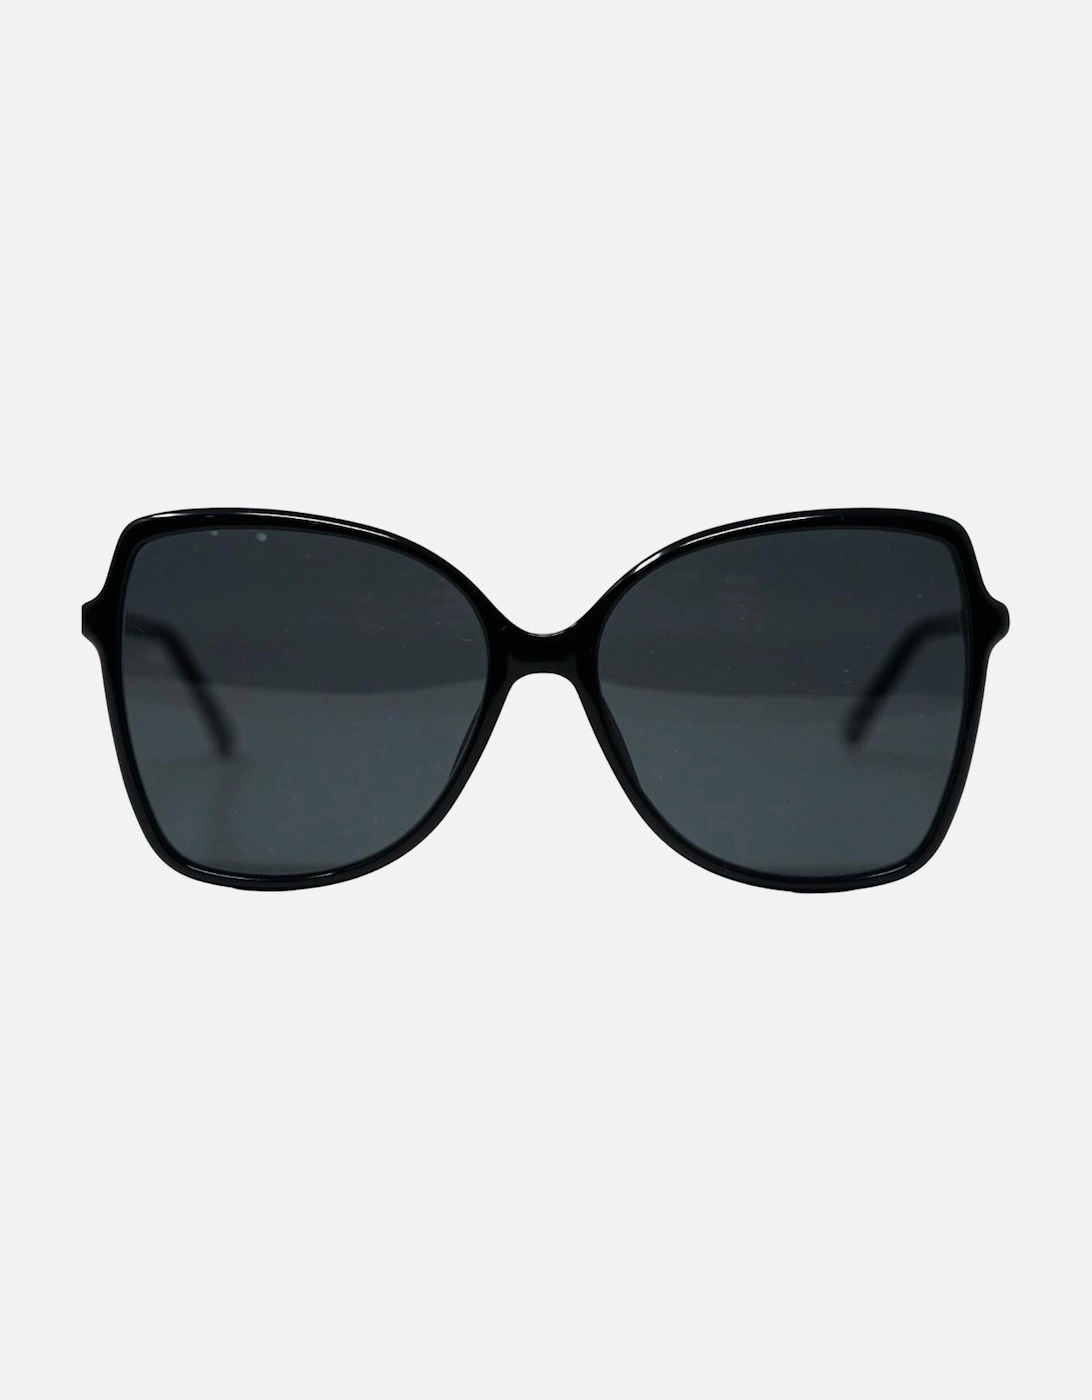 Fede/S 0807 IR Black Sunglasses, 4 of 3